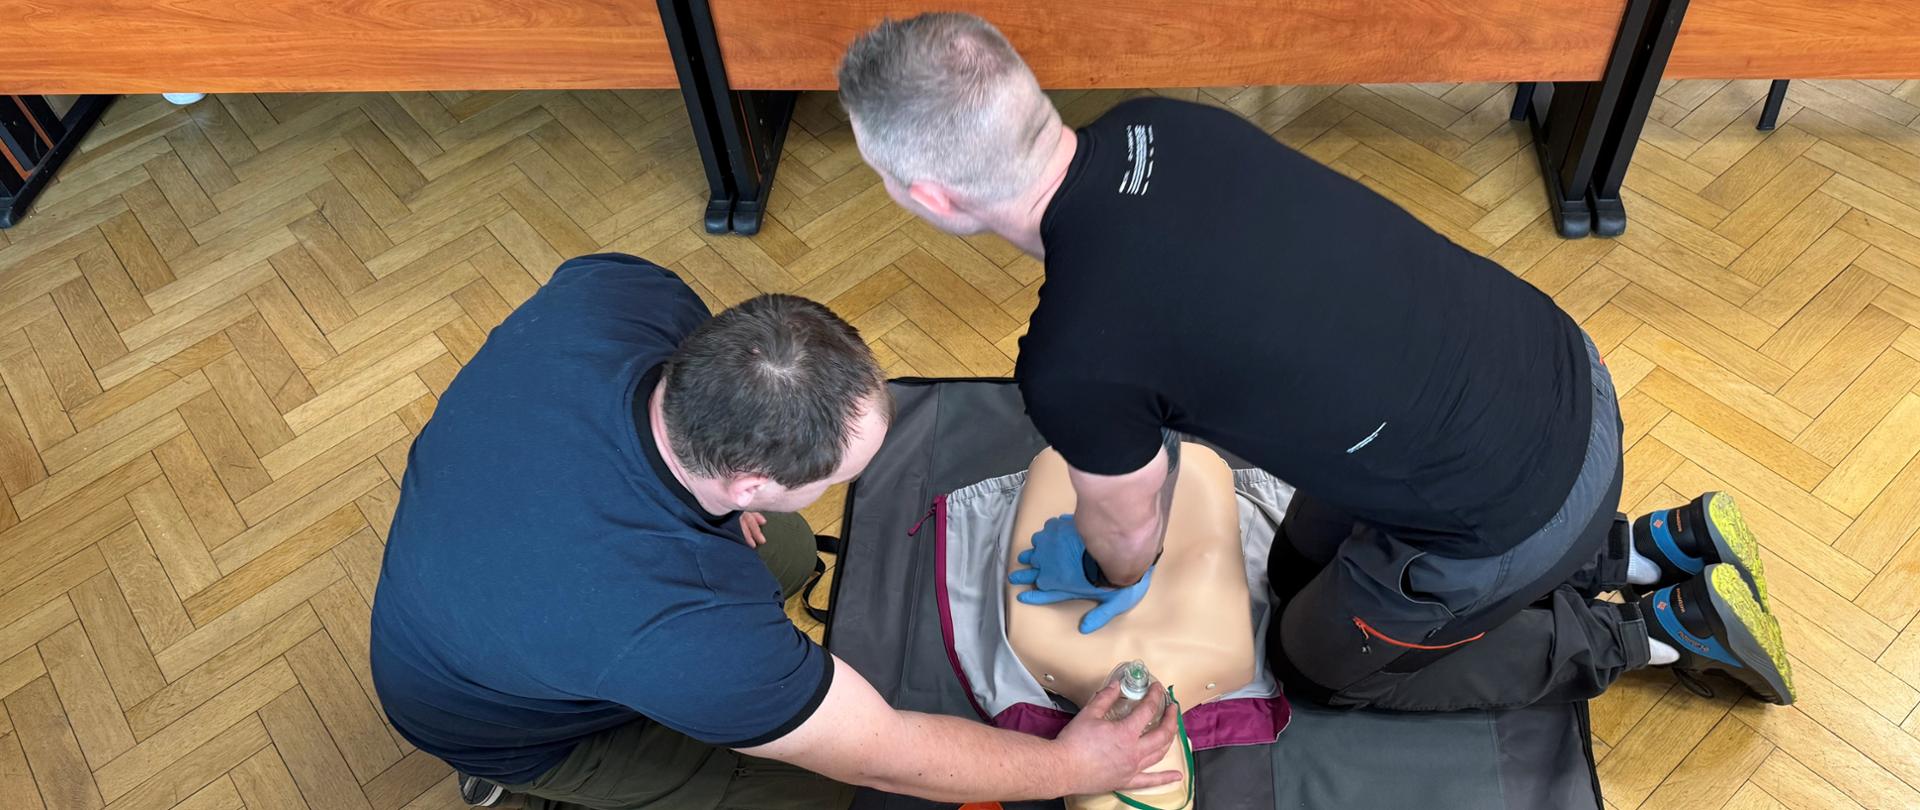 Pracownik WIOŚ w Warszawie szkoli się wraz z instruktorem z udzielania pierwszej pomocy. Wykorzystuje manekina, na którym można ćwiczyć resuscytacji krążeniowo-oddechowej.